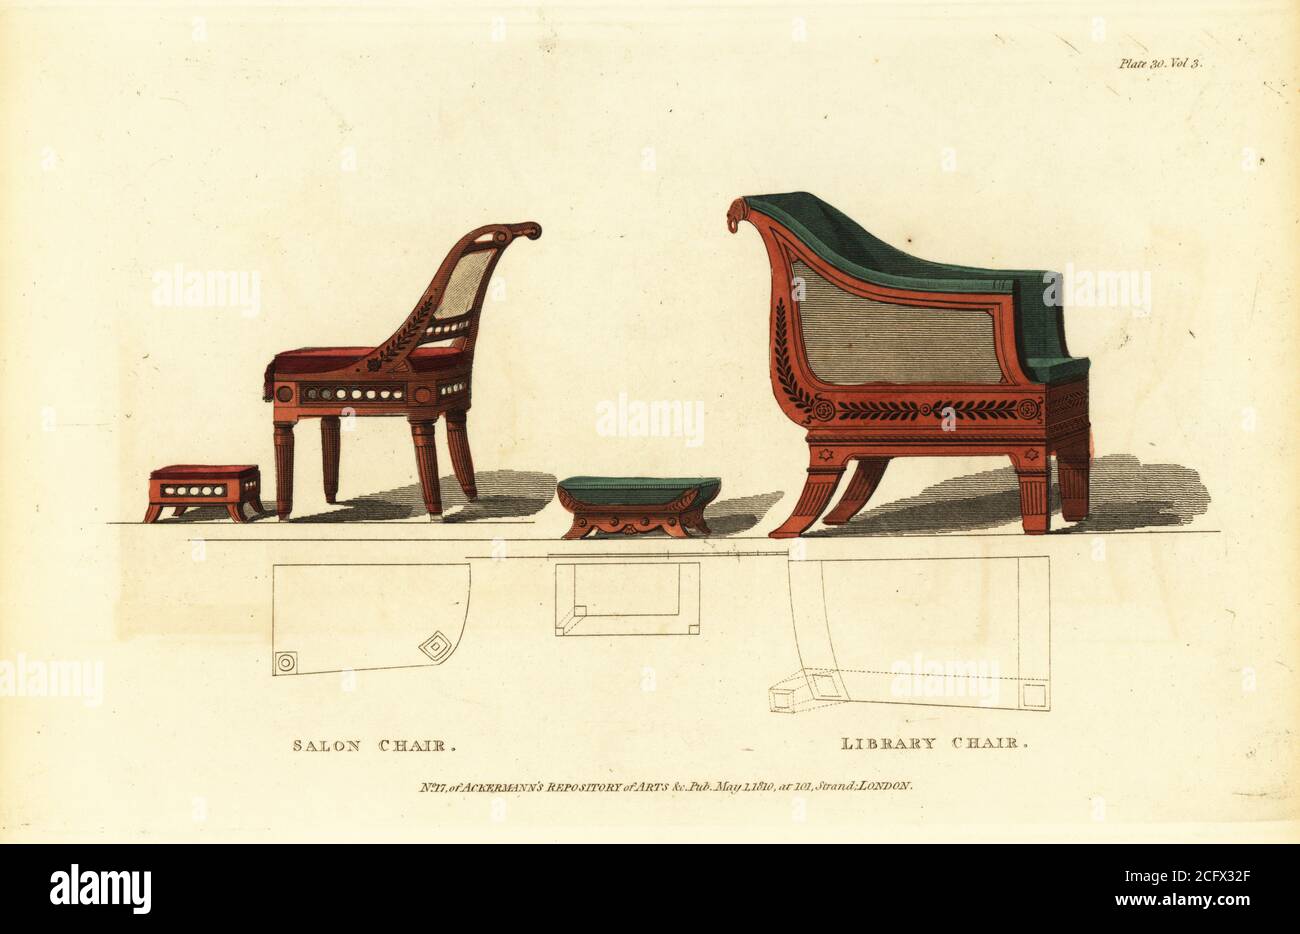 Silla de salón y silla de biblioteca, 1810. La silla romana y el reposapiés  son ideales para el salón, en caoba tallada o dorada, la silla de la  biblioteca viene con el